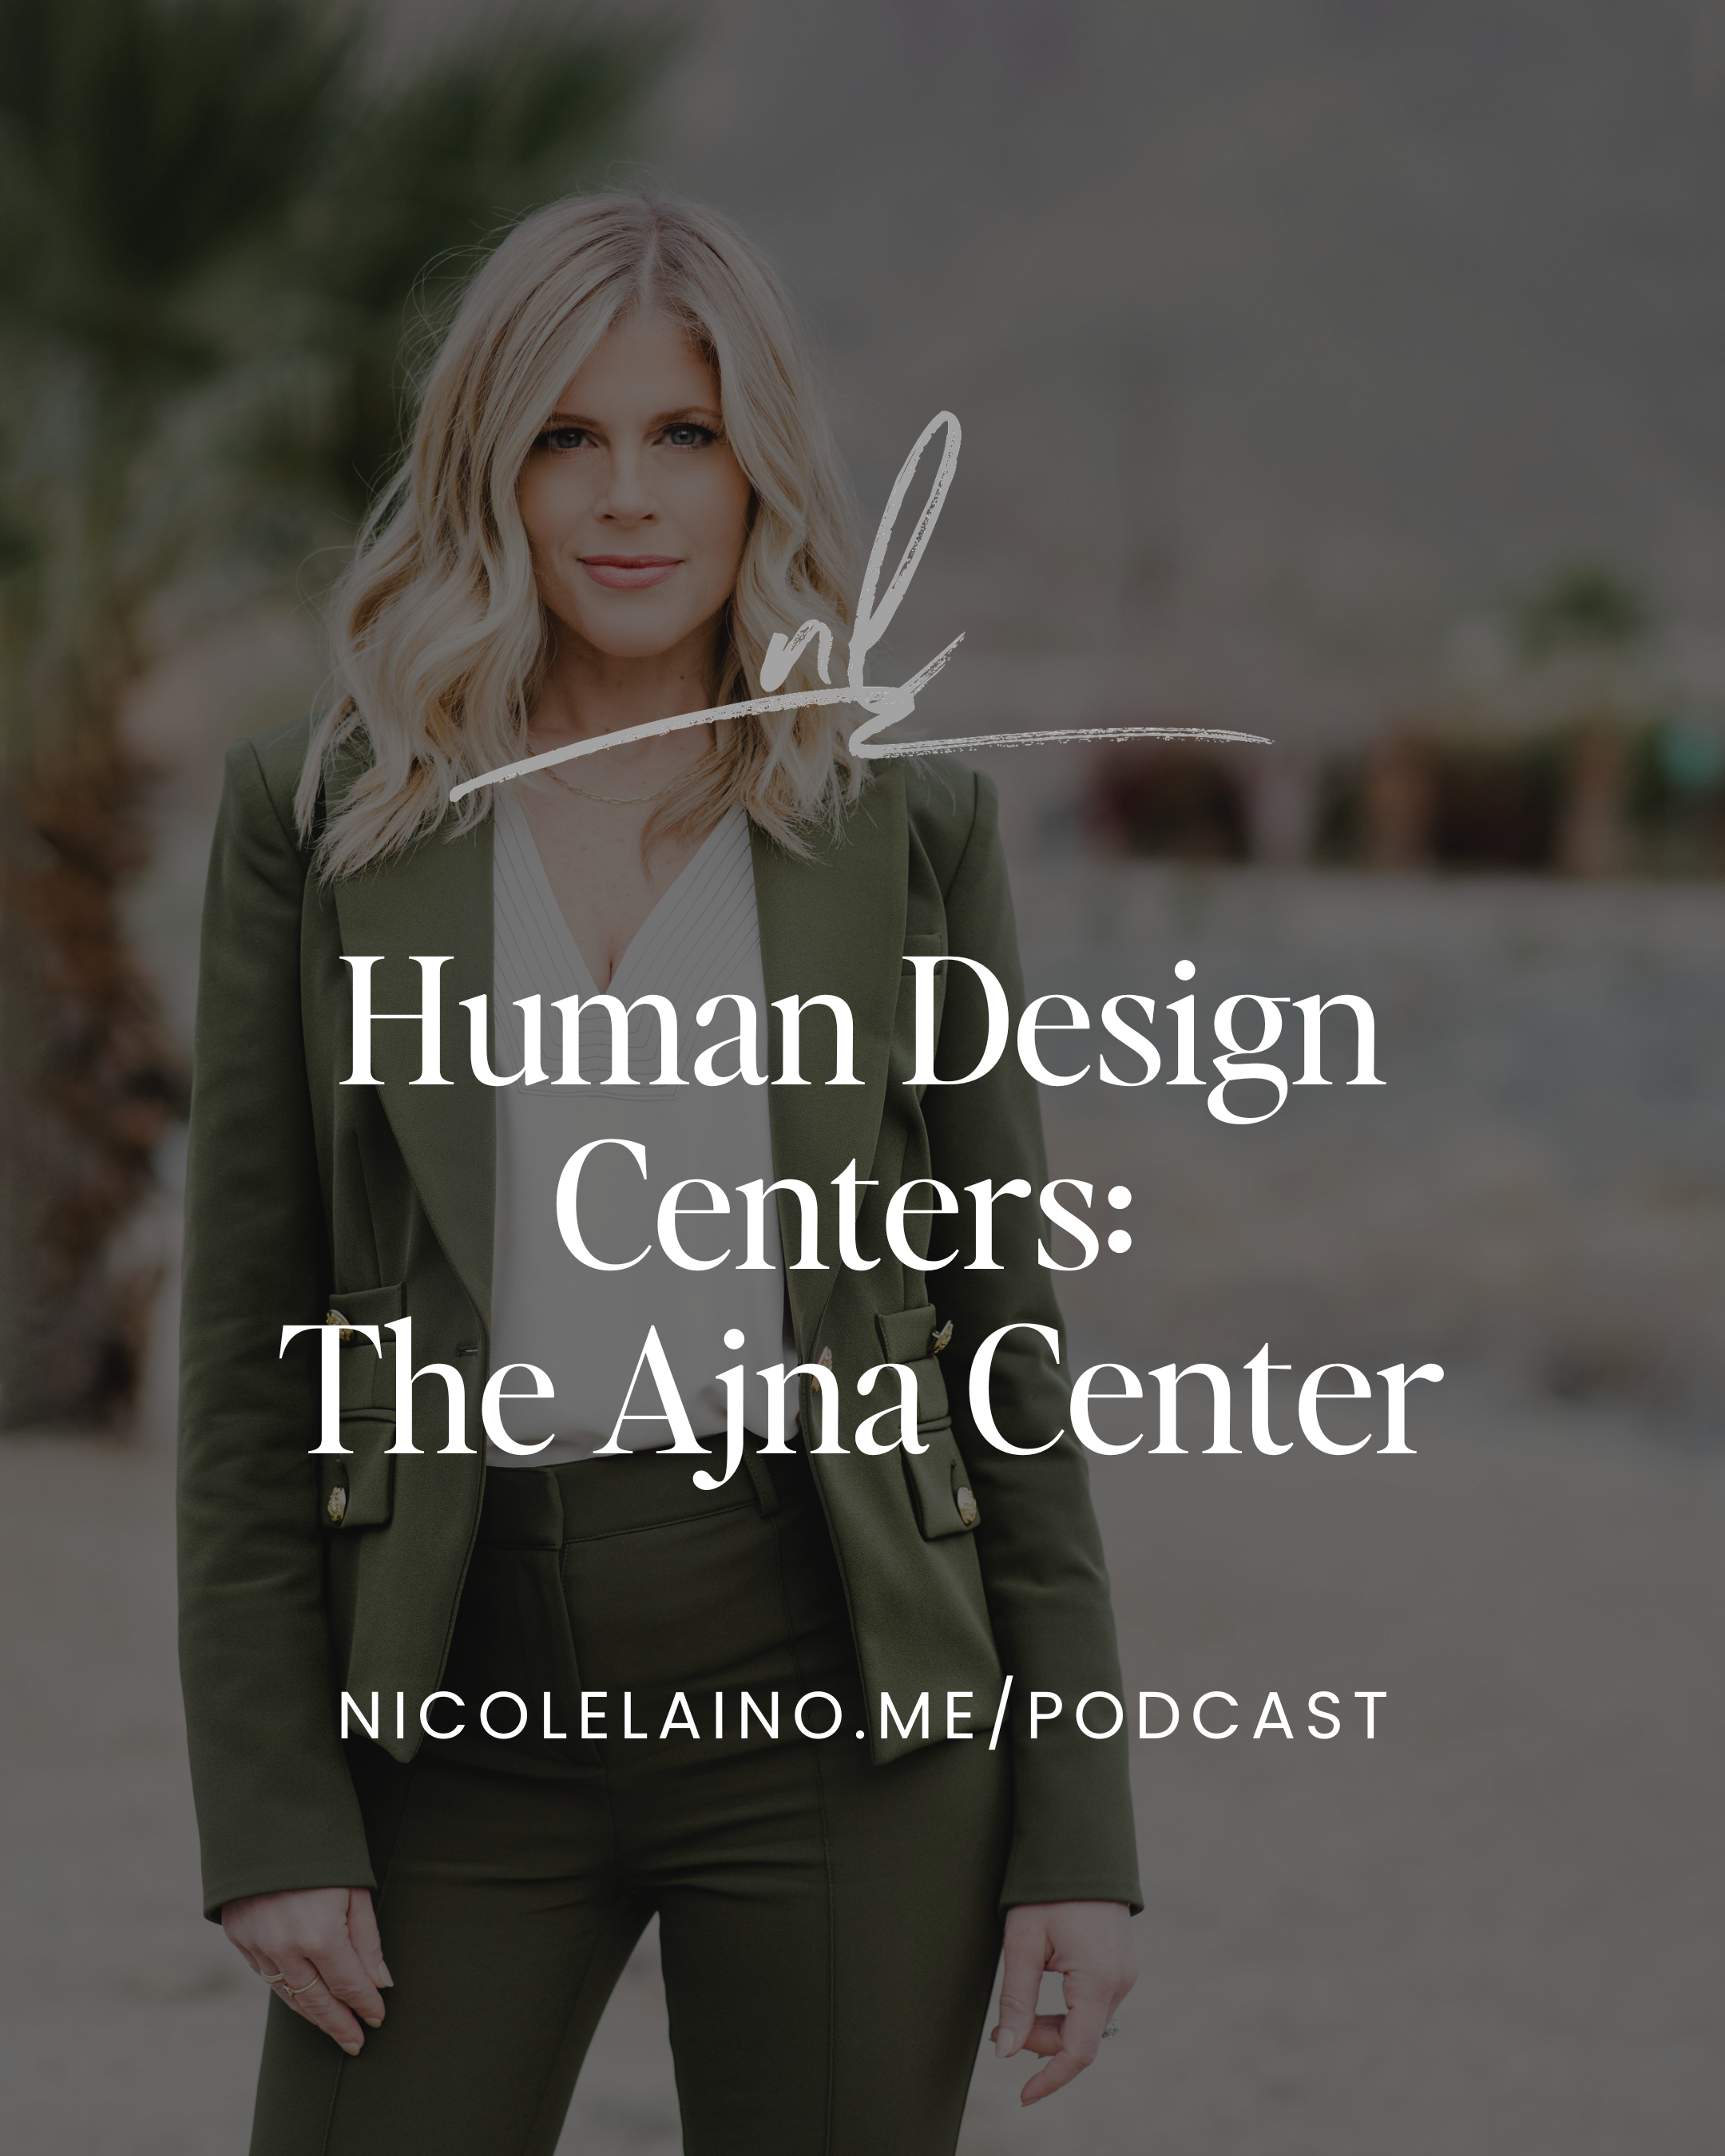 Human Design Centers: The Ajna Center